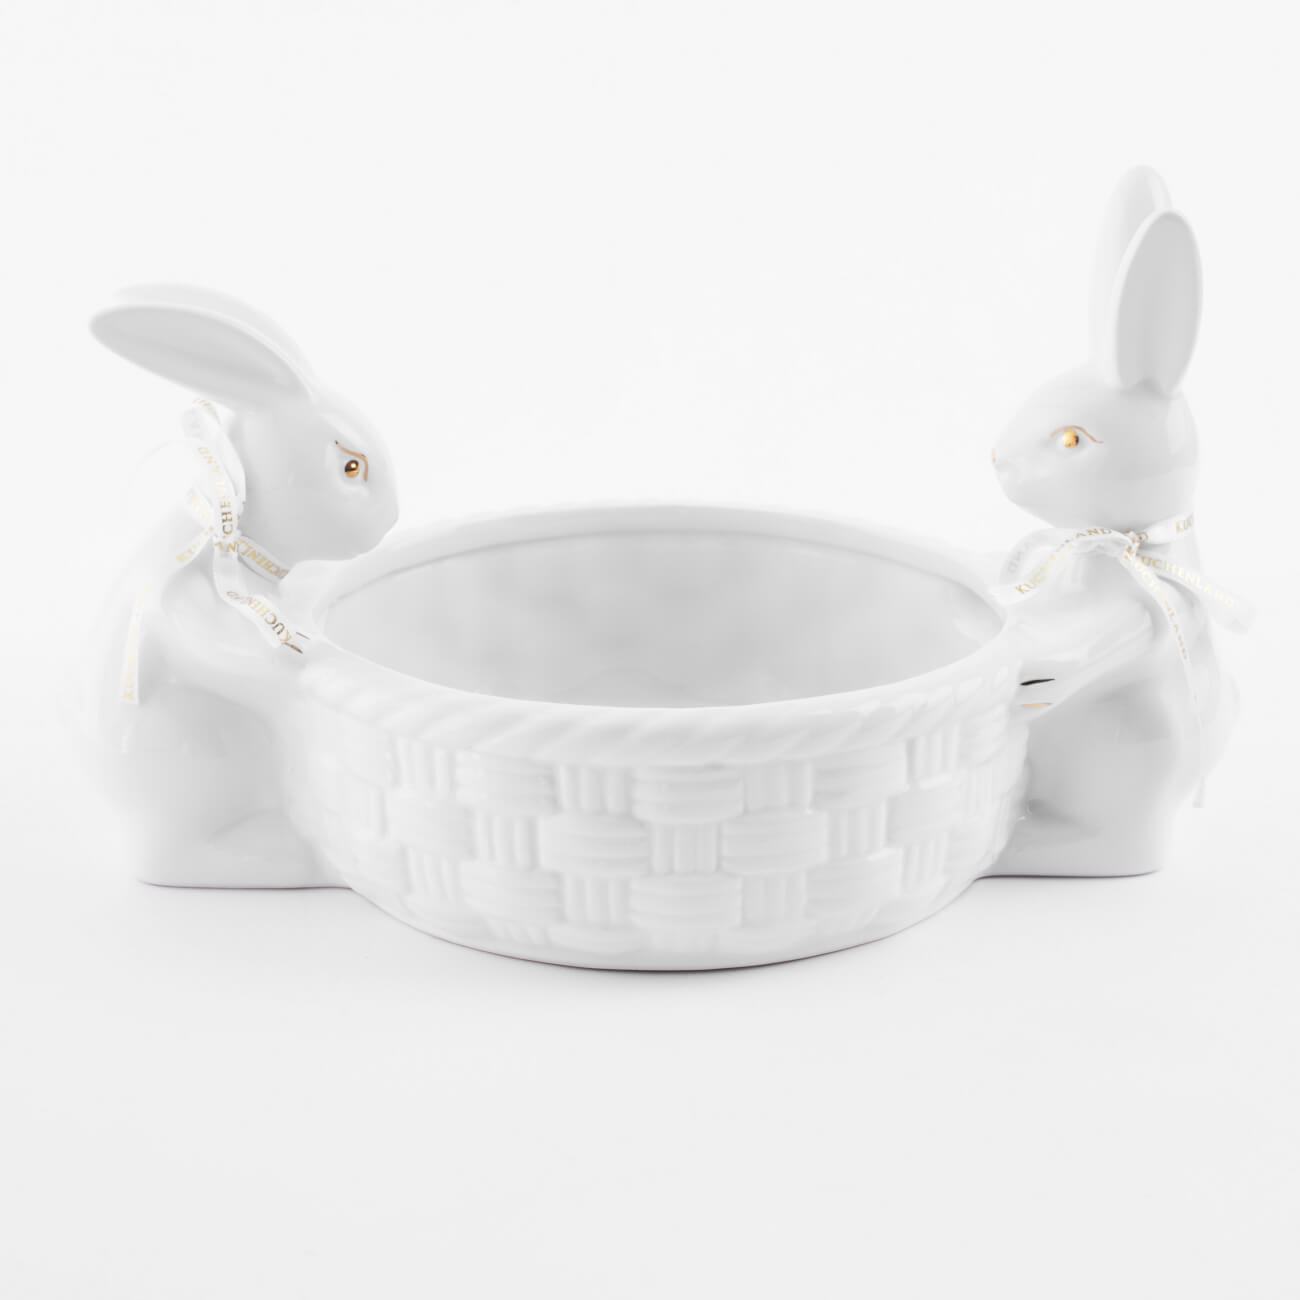 Конфетница, 28х16 см, керамика, белая, Кролики с плетенной корзиной, Easter gold